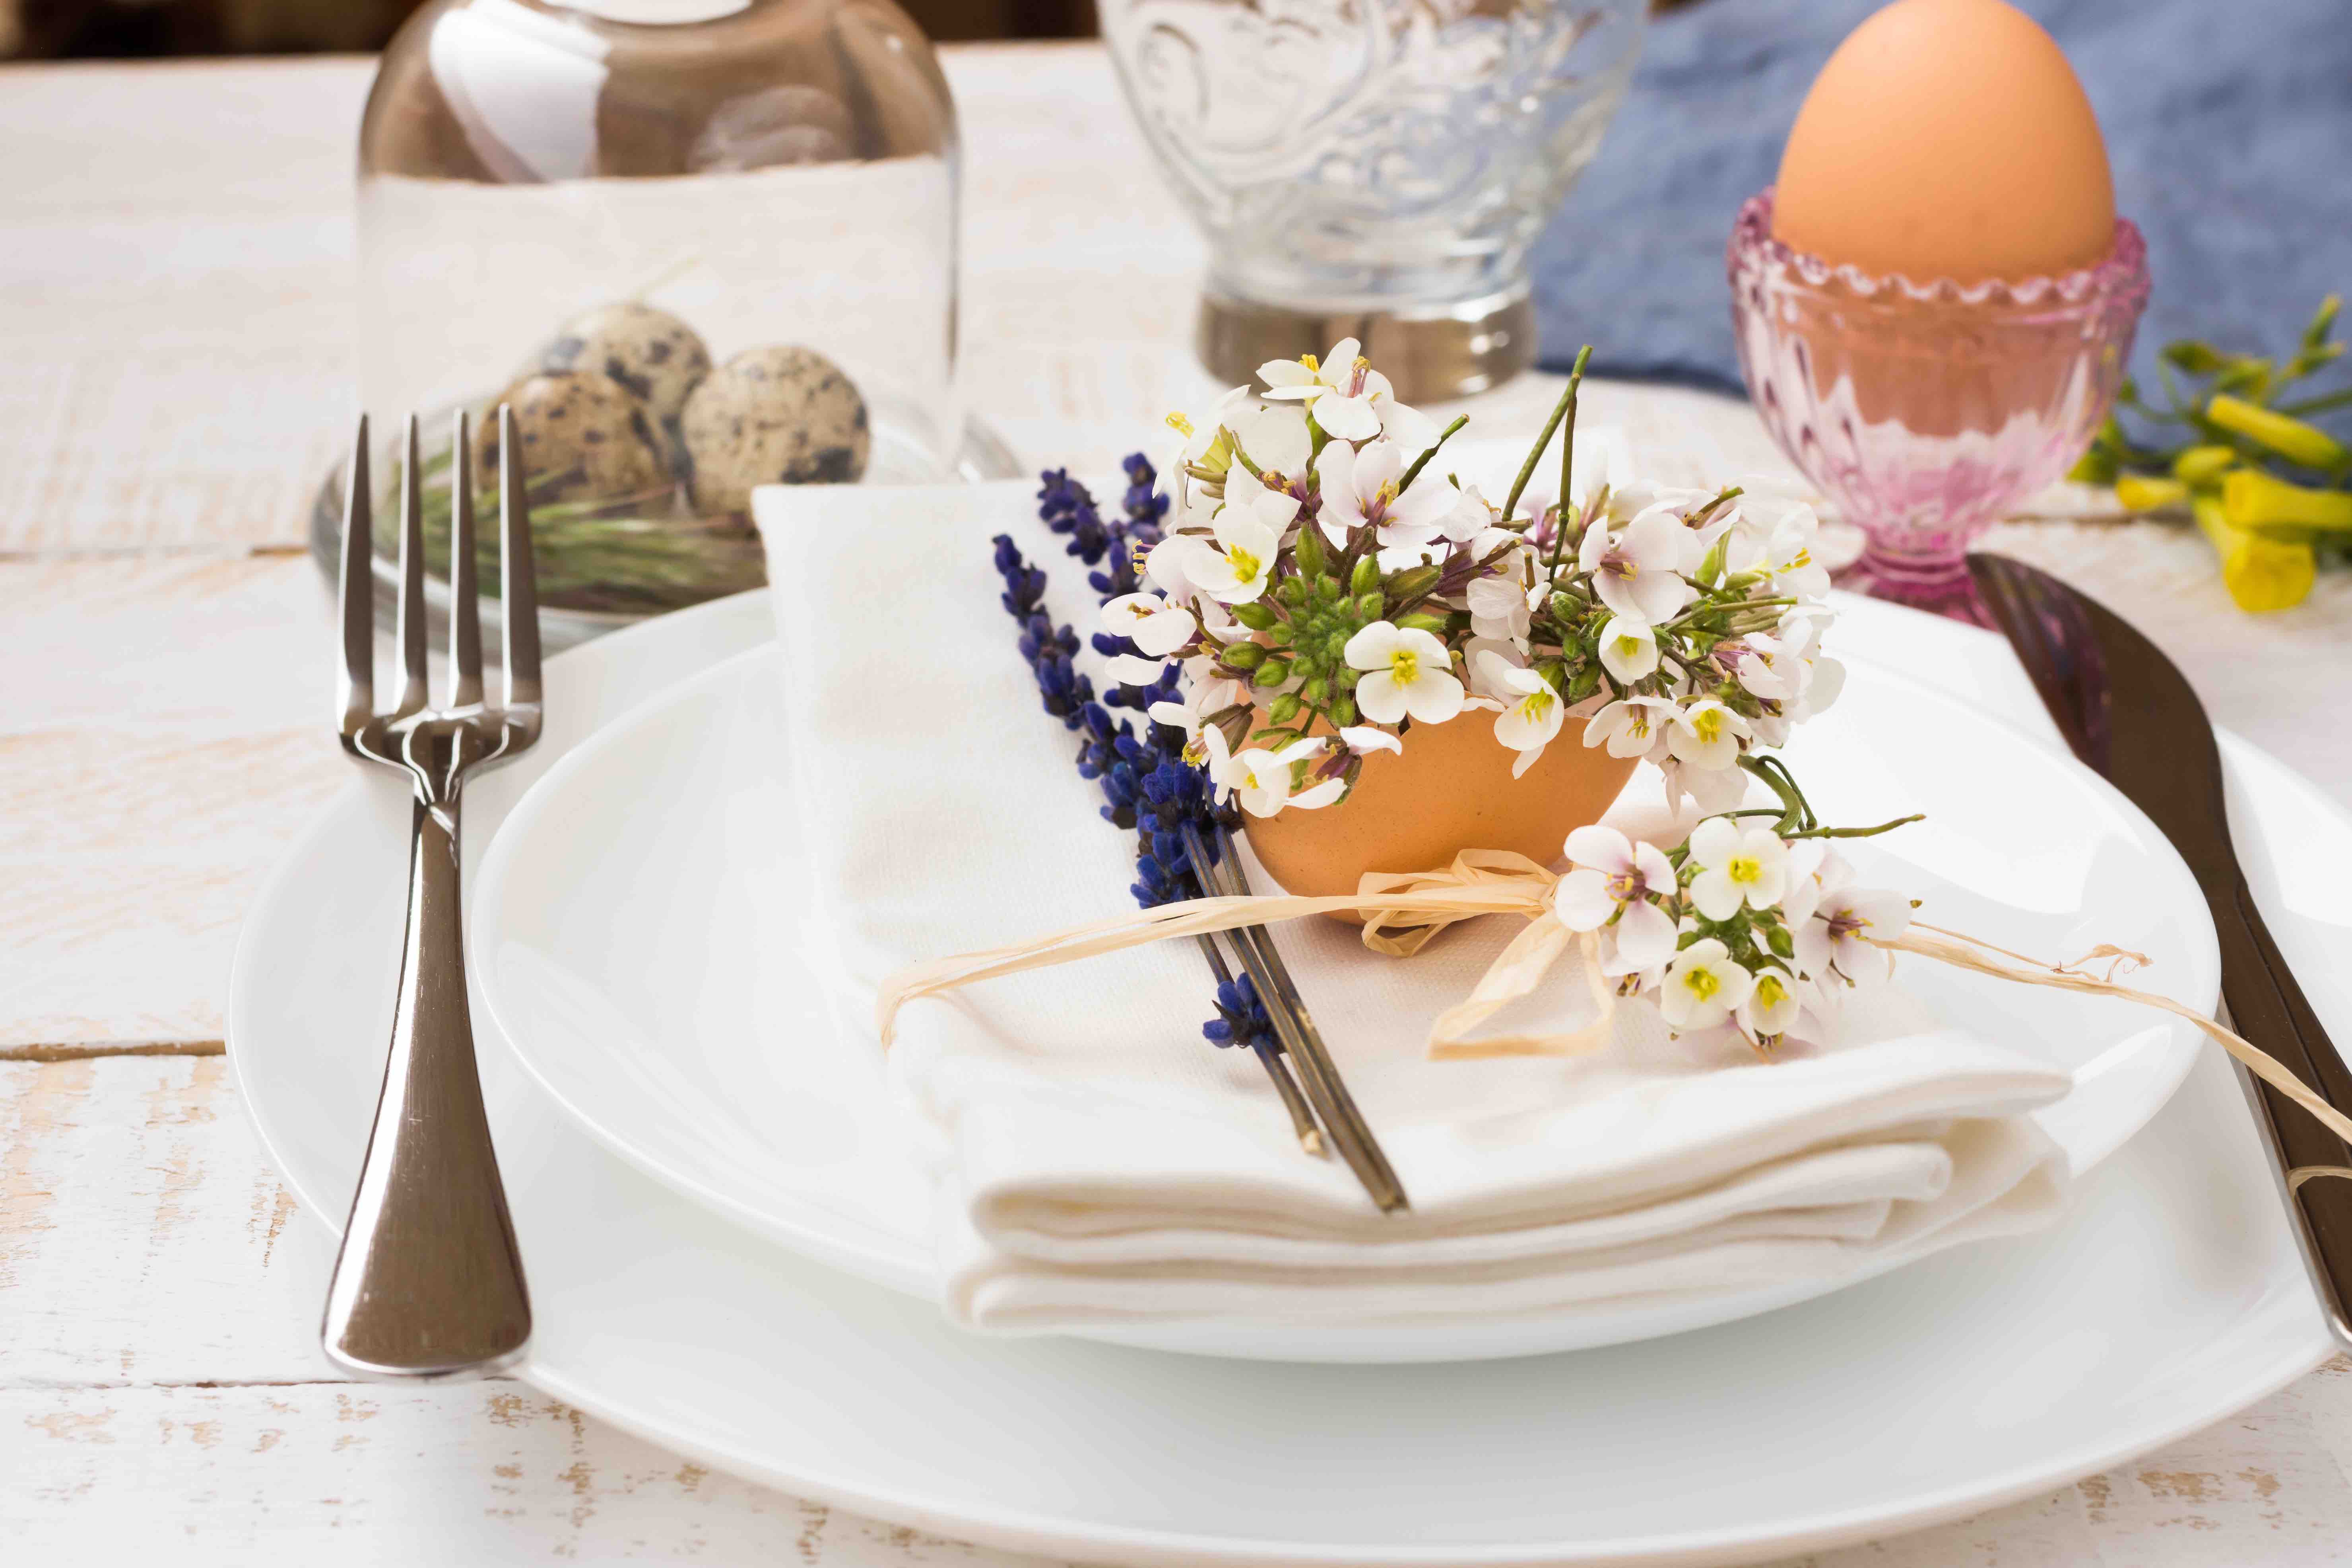 Weißer Holztisch mit weißem Geschirr, weißer Stoffserviette und Besteck. Auf dem Gedeck liegt eine Deko mit Eierschale, Lavendel und weißen Blumen. Auf dem Tisch stehen ein rosafarbener Glas-Eibecher mit gekochtem Ei darin sowie eine Glasglocke mit drei Wachteleiern darunter.